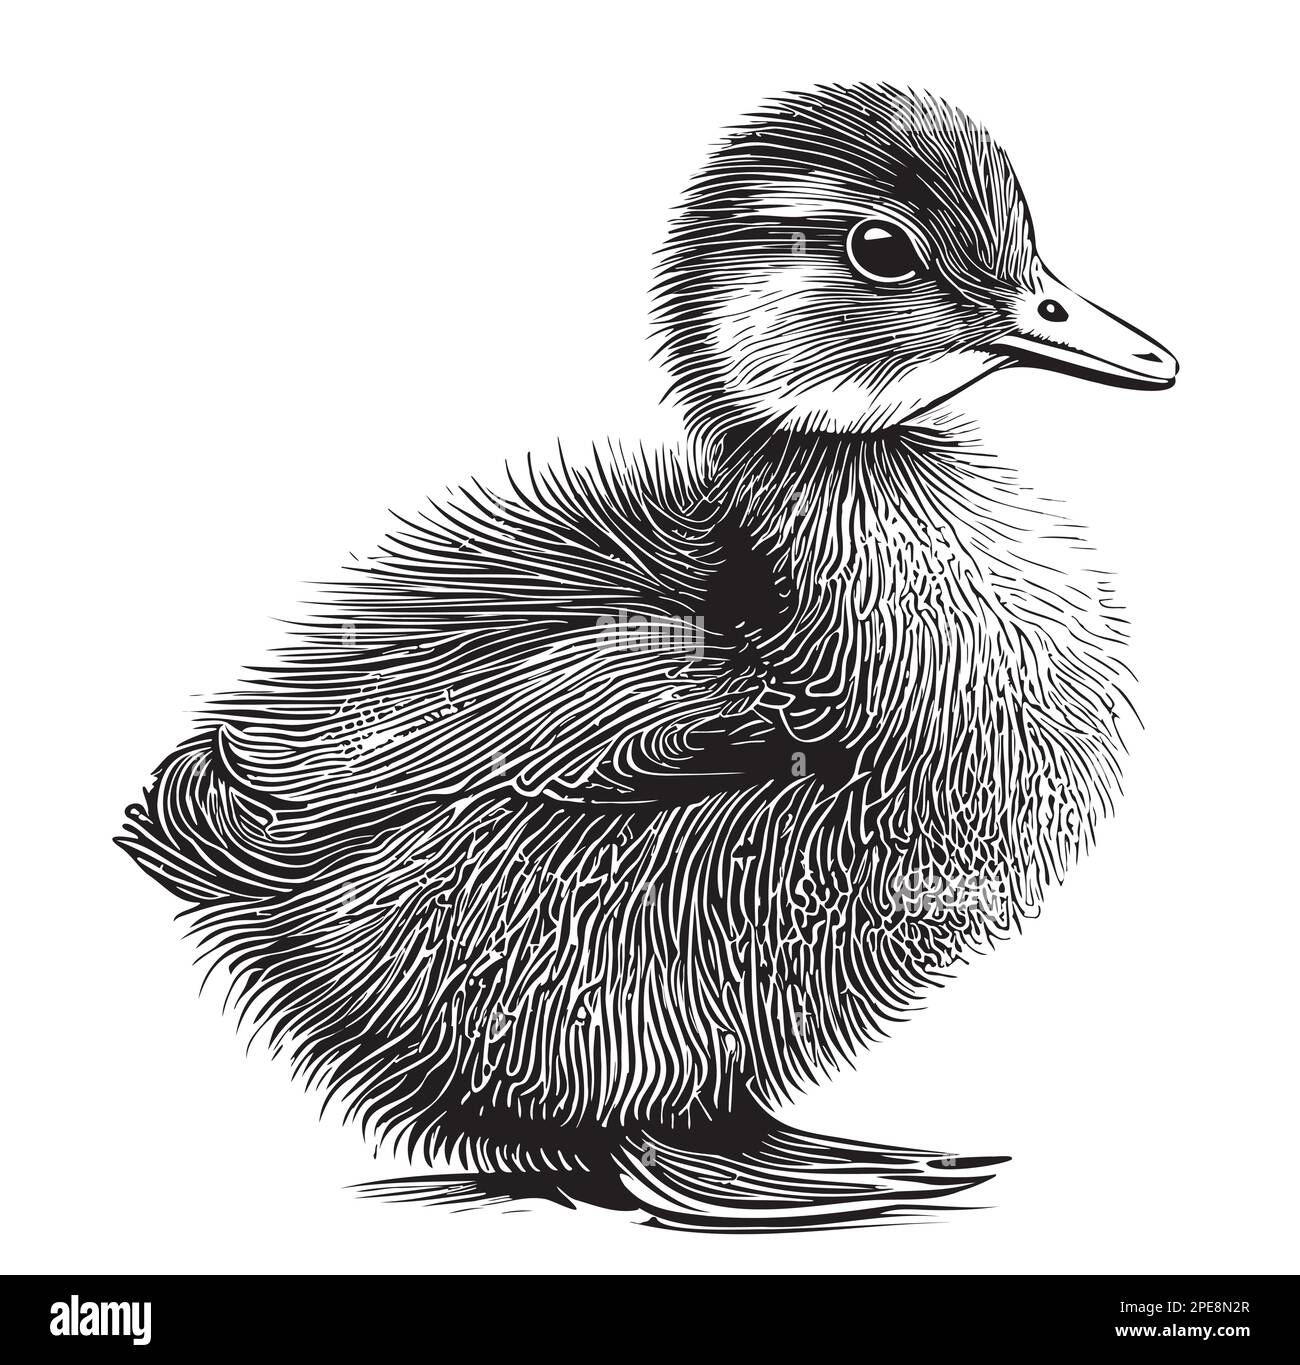 Petit dessin de canard dessiné à la main Illustration vectorielle oiseaux Illustration de Vecteur